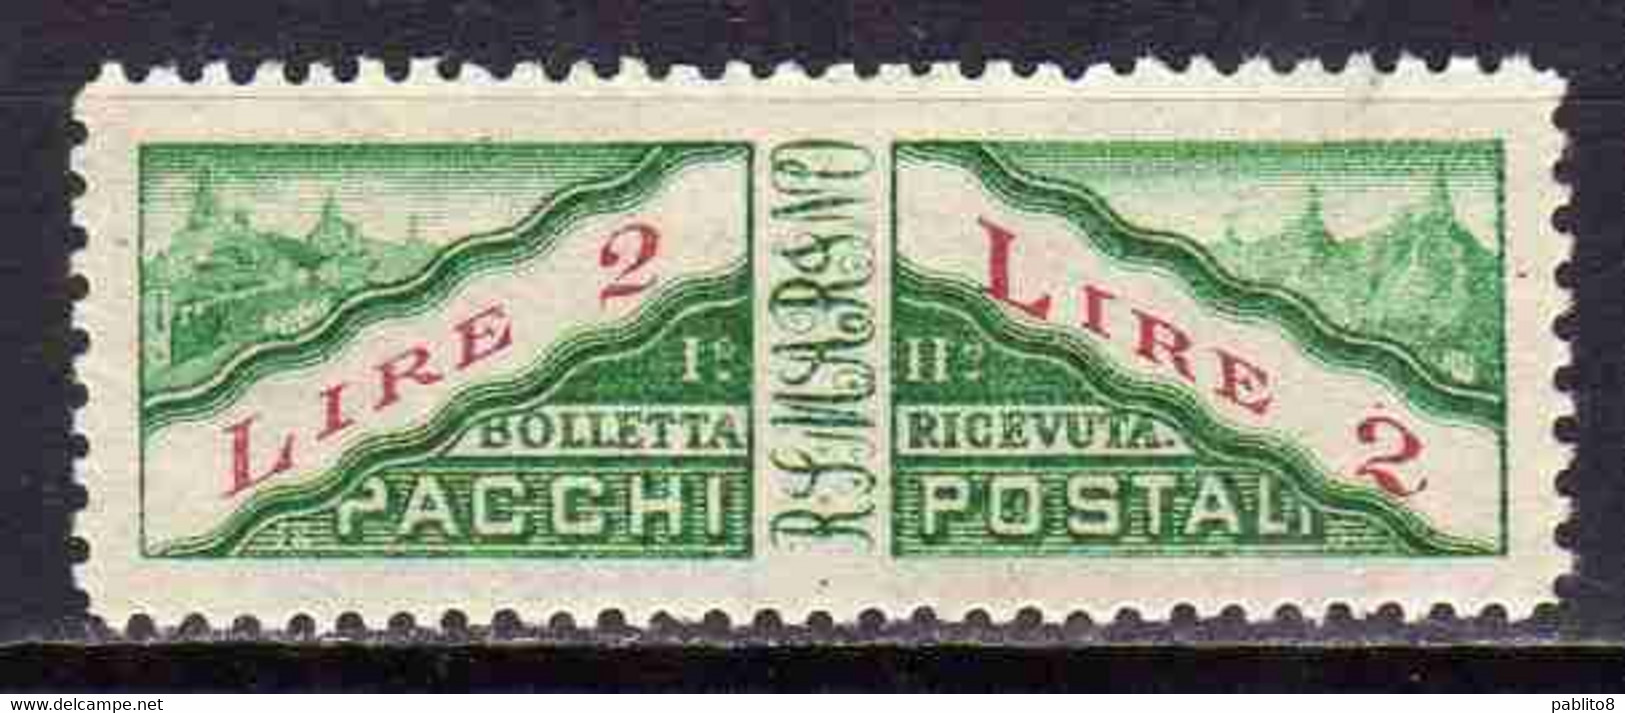 REPUBBLICA DI SAN MARINO 1928 PACCHI POSTALI PARCEL POST LIRE 2 MNH - Parcel Post Stamps